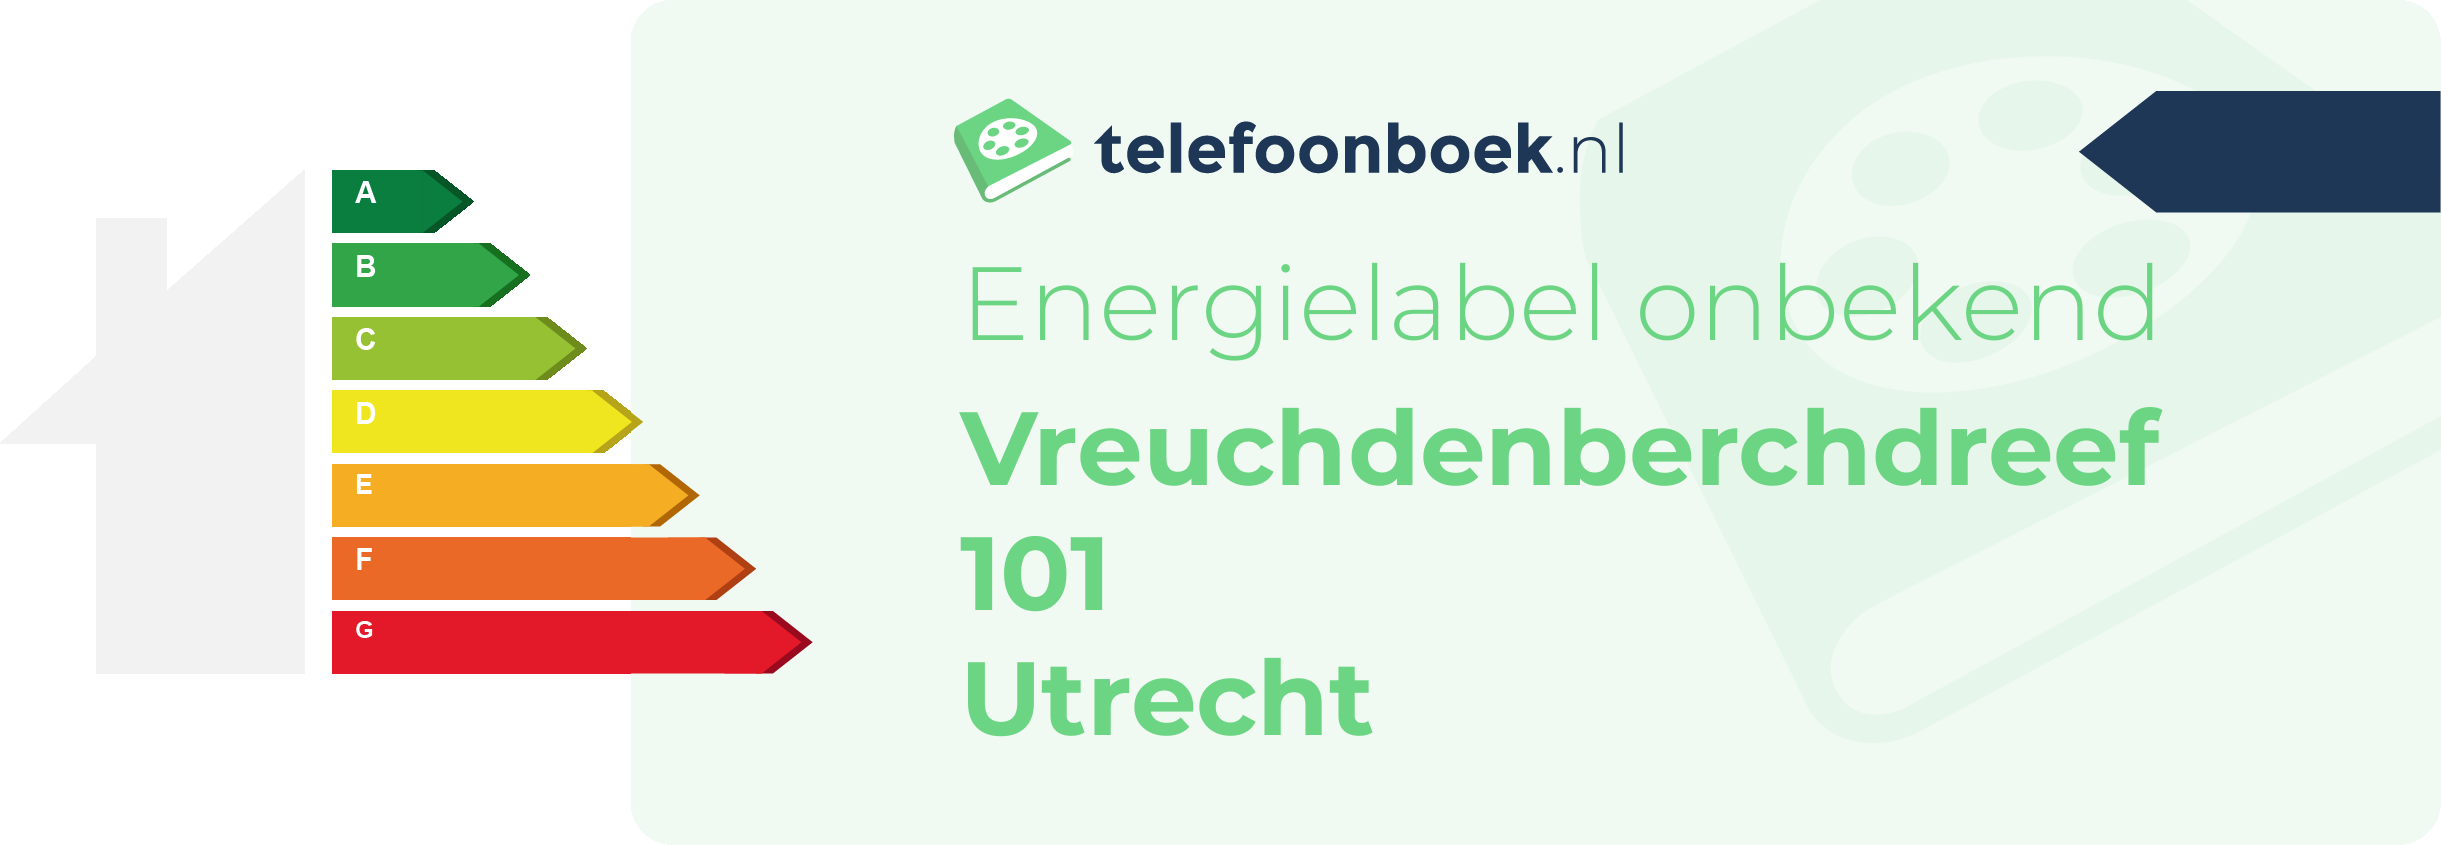 Energielabel Vreuchdenberchdreef 101 Utrecht